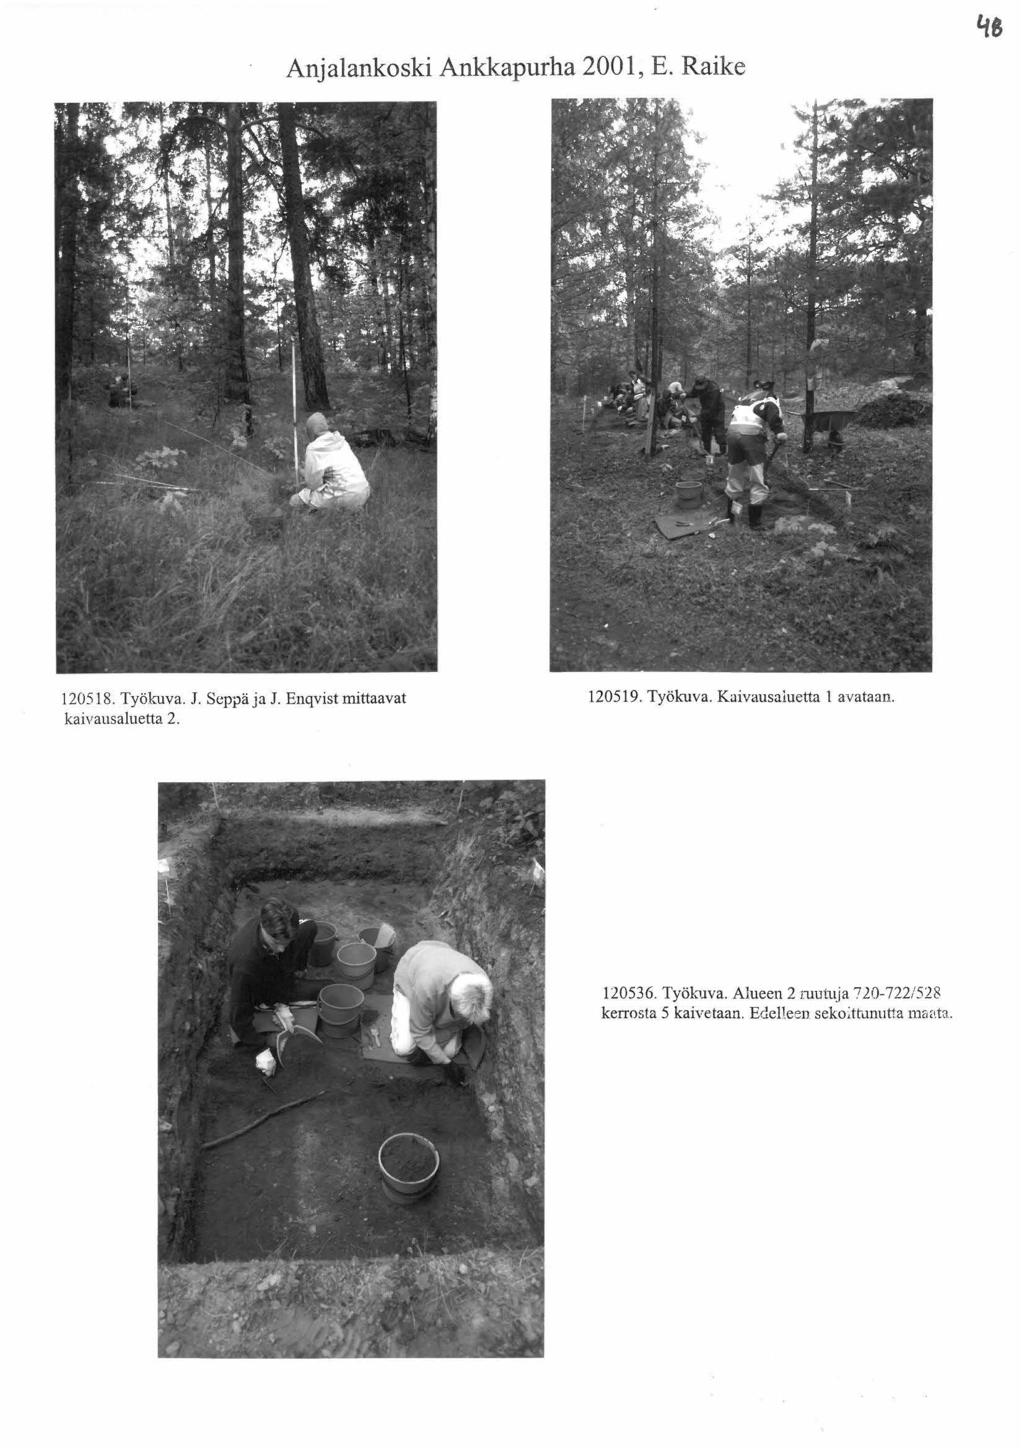 Anjalankoski Ankkapurha 2001, E. Raike 120518. Työkuva. J. Seppä ja J. Enqvist mittaavat kaivausaluetta 2. 120519. Työkuva. Kuivausaluetta 1 avataan.